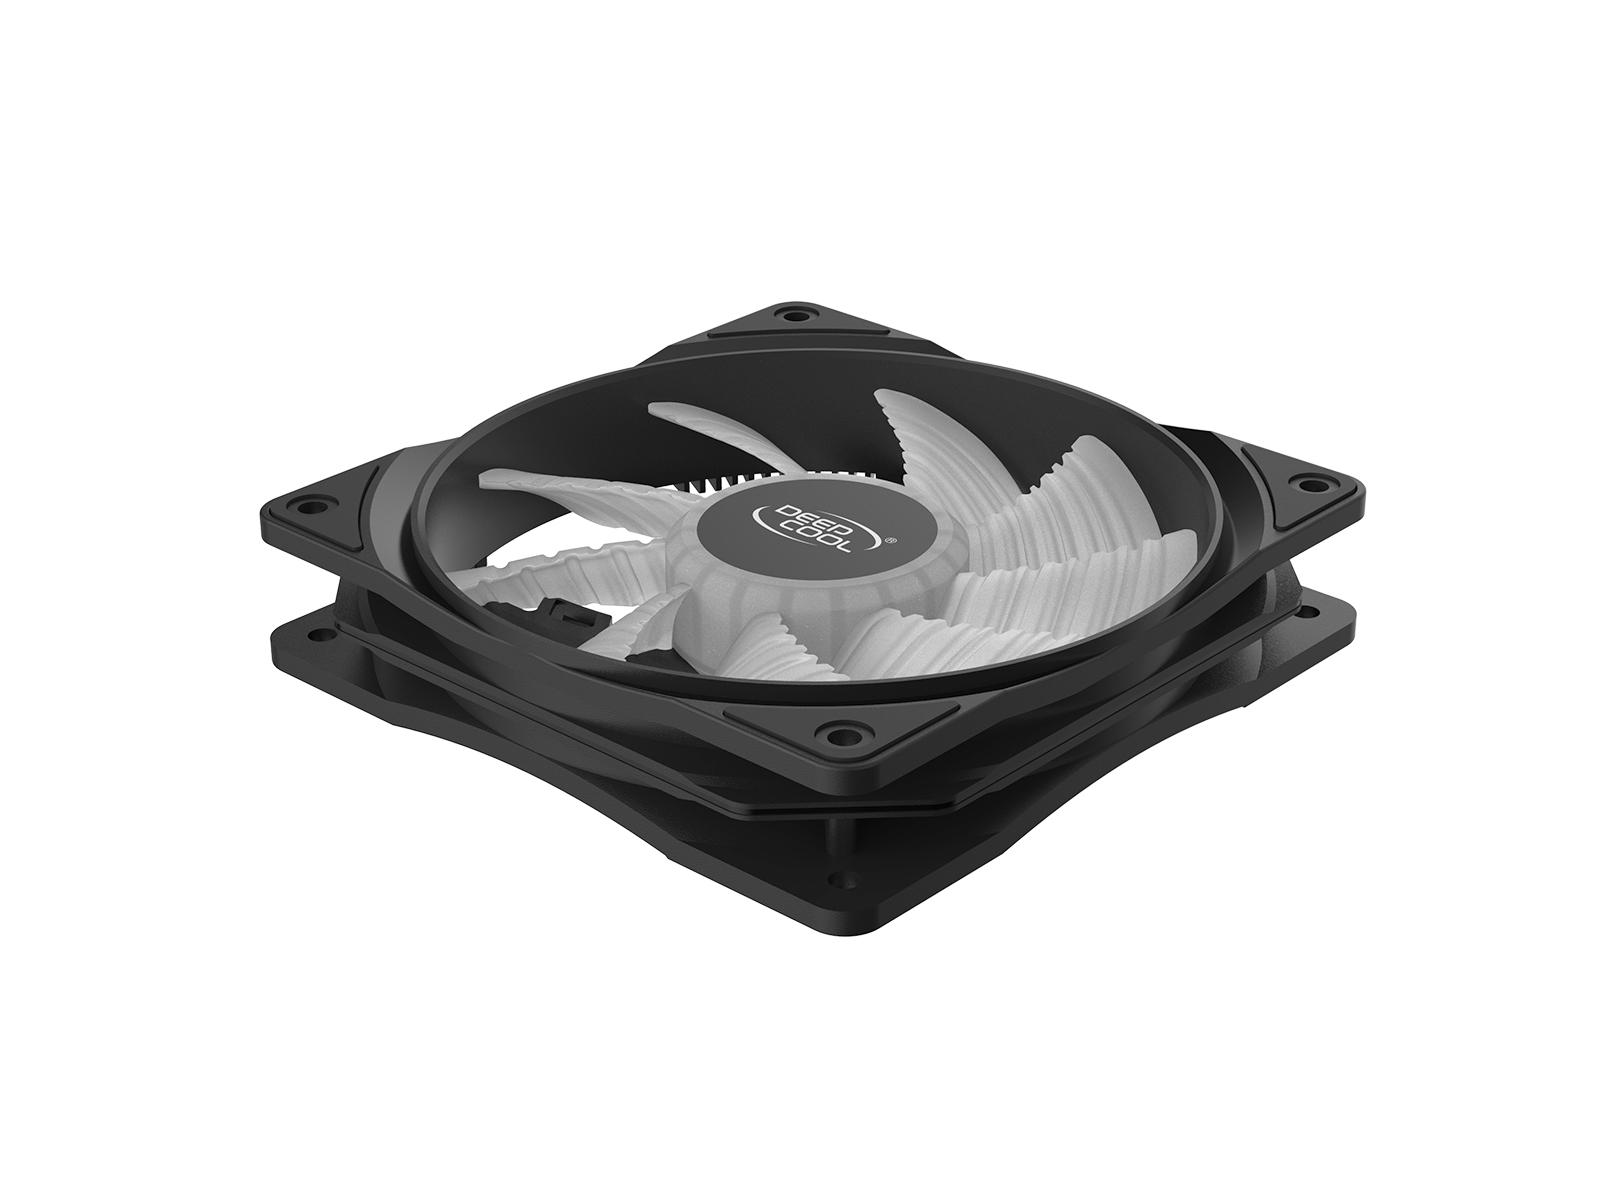 Selected image for DeepCool ventilator računarskog kućišta 12 cm Crno sa plavim osvetljenjem